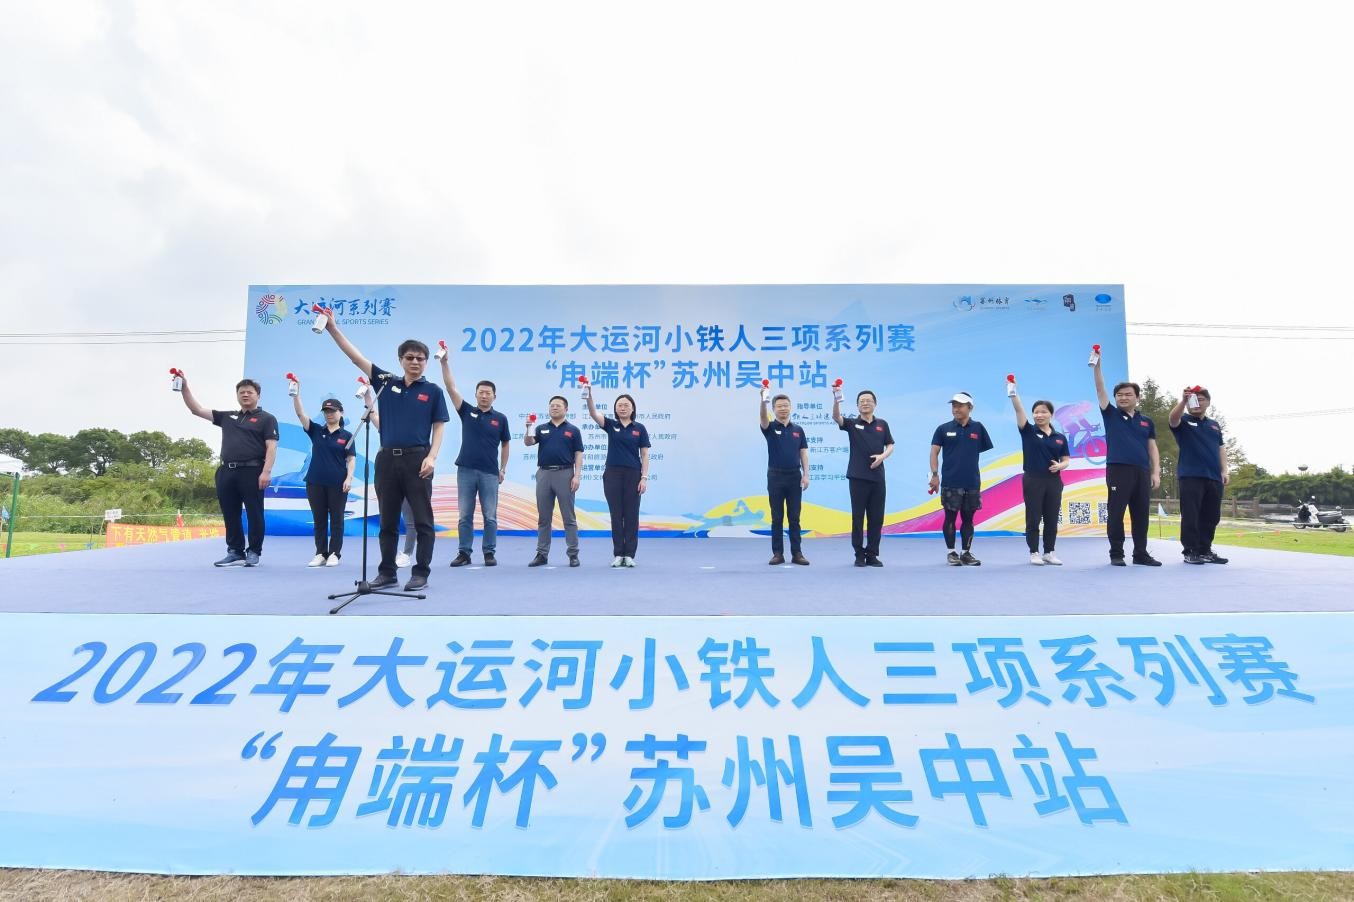  2022年大运河小铁人三项系列赛“甪端杯”苏州吴中站顺利举行